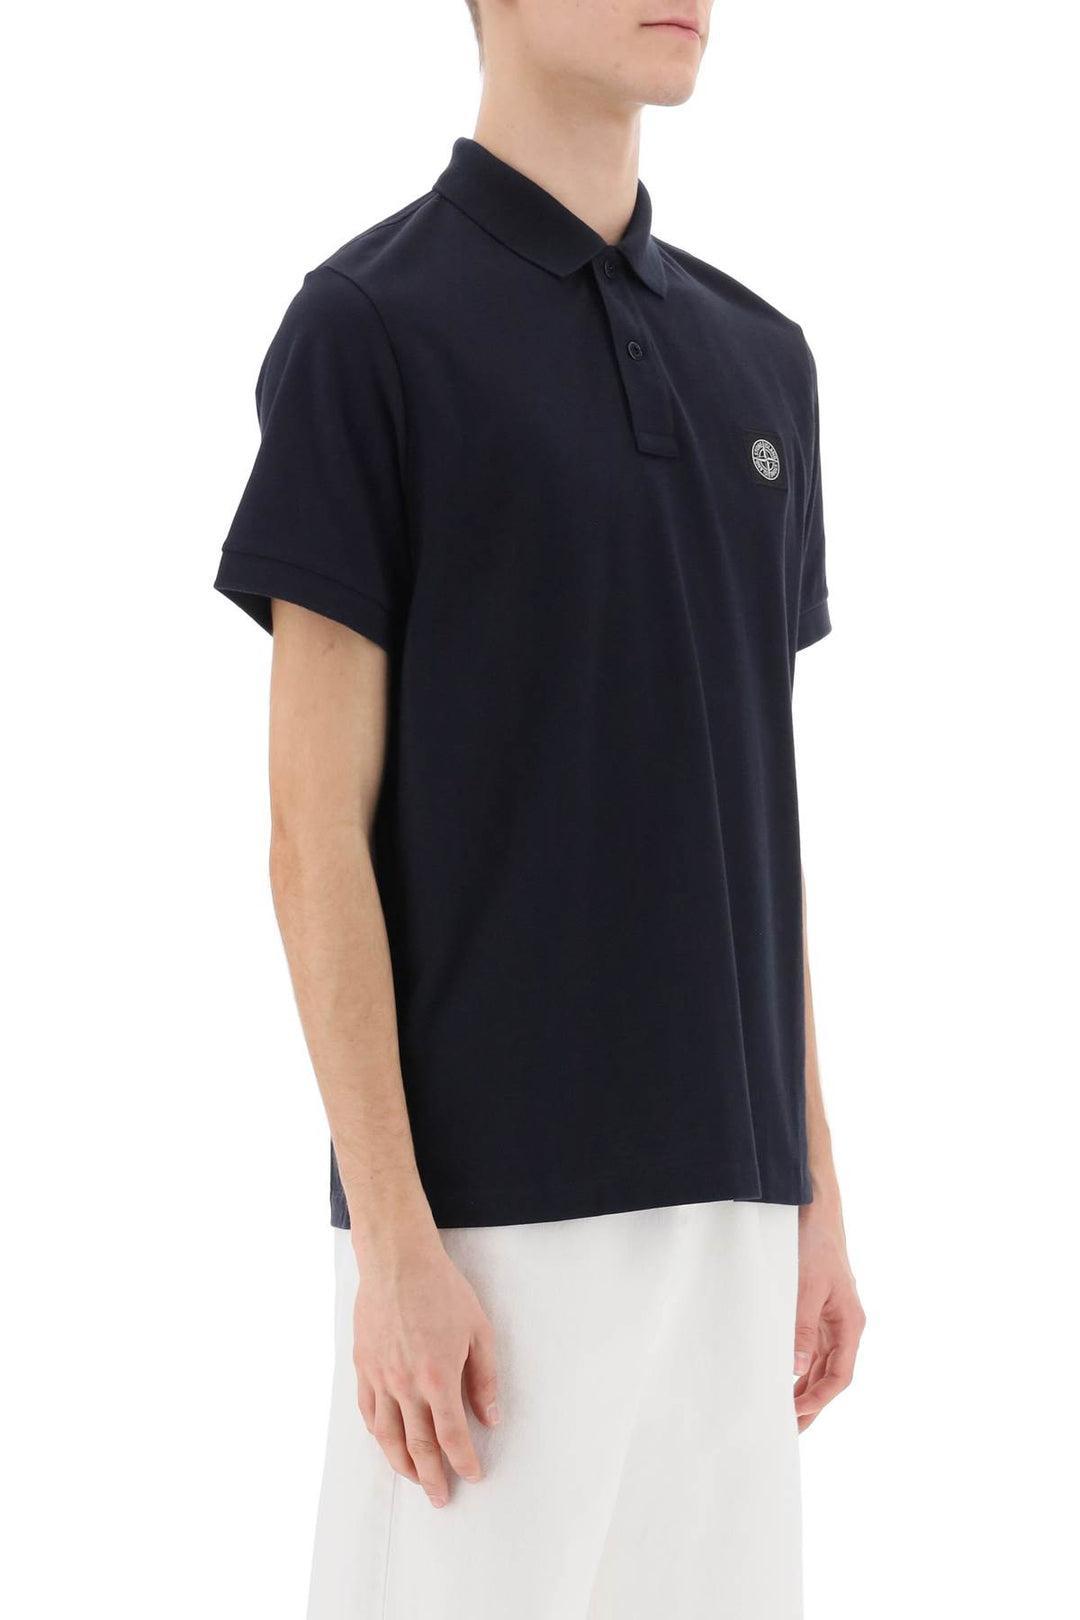 Stone Island Slim Fit Polo Shirt With Logo Patch   Blu